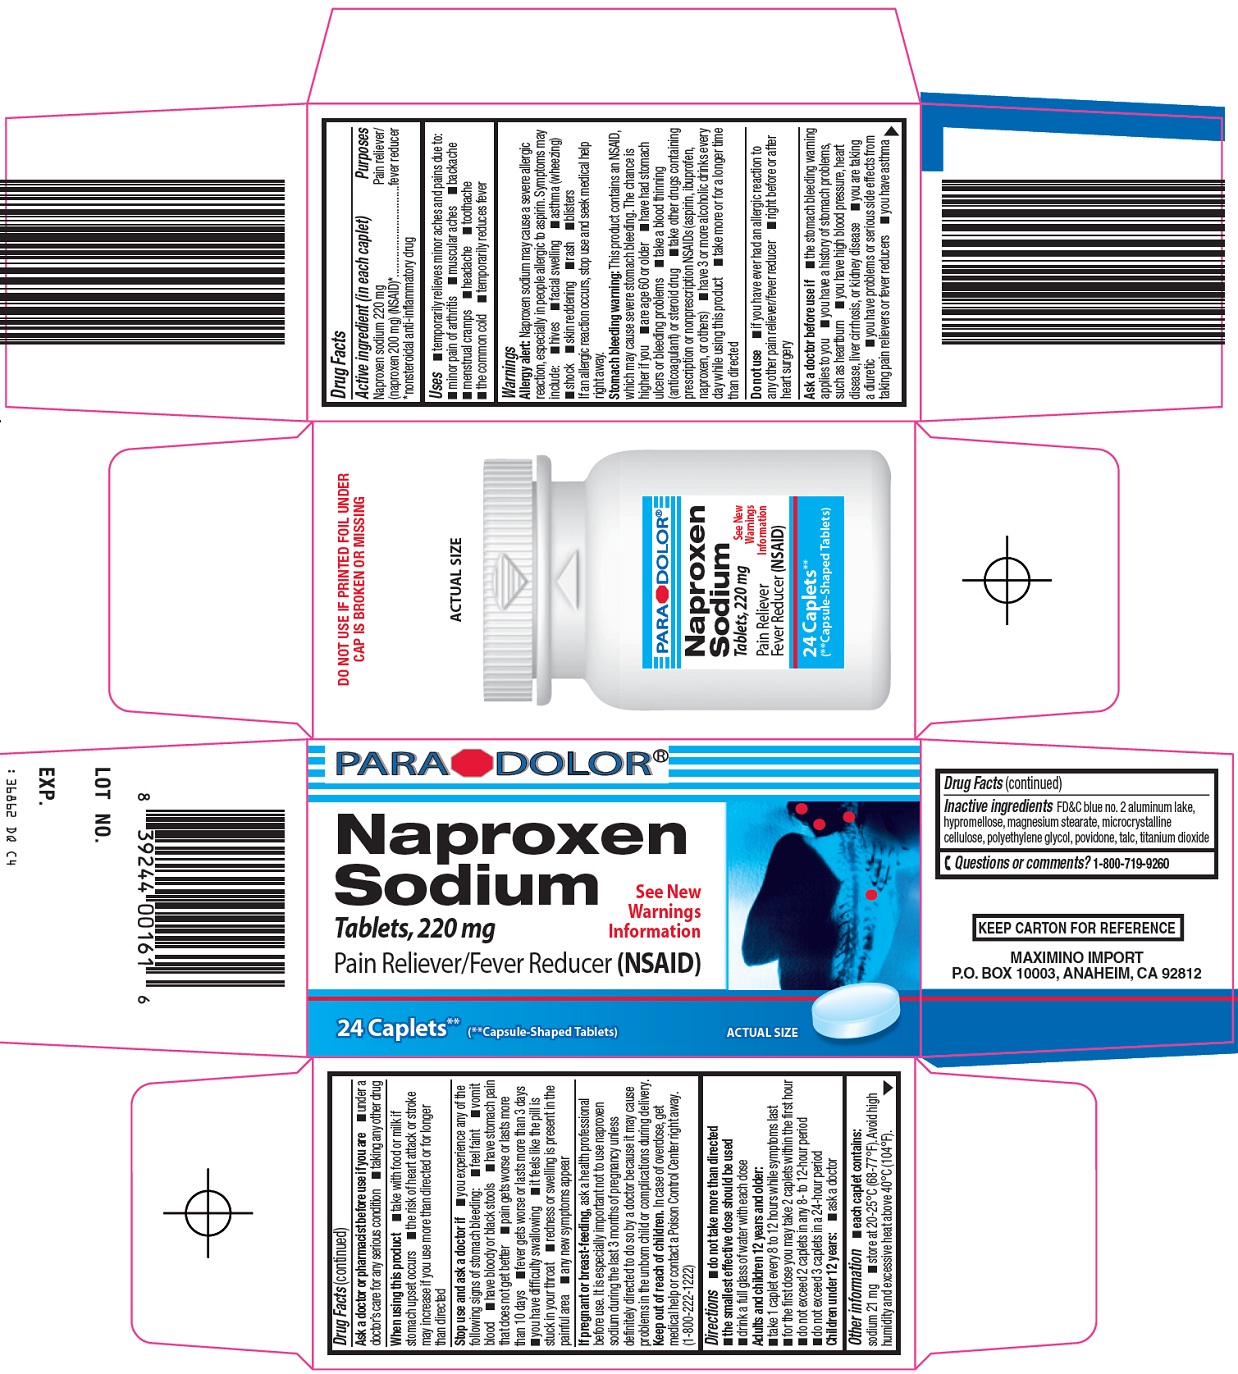 Naproxen Sodium Carton Image